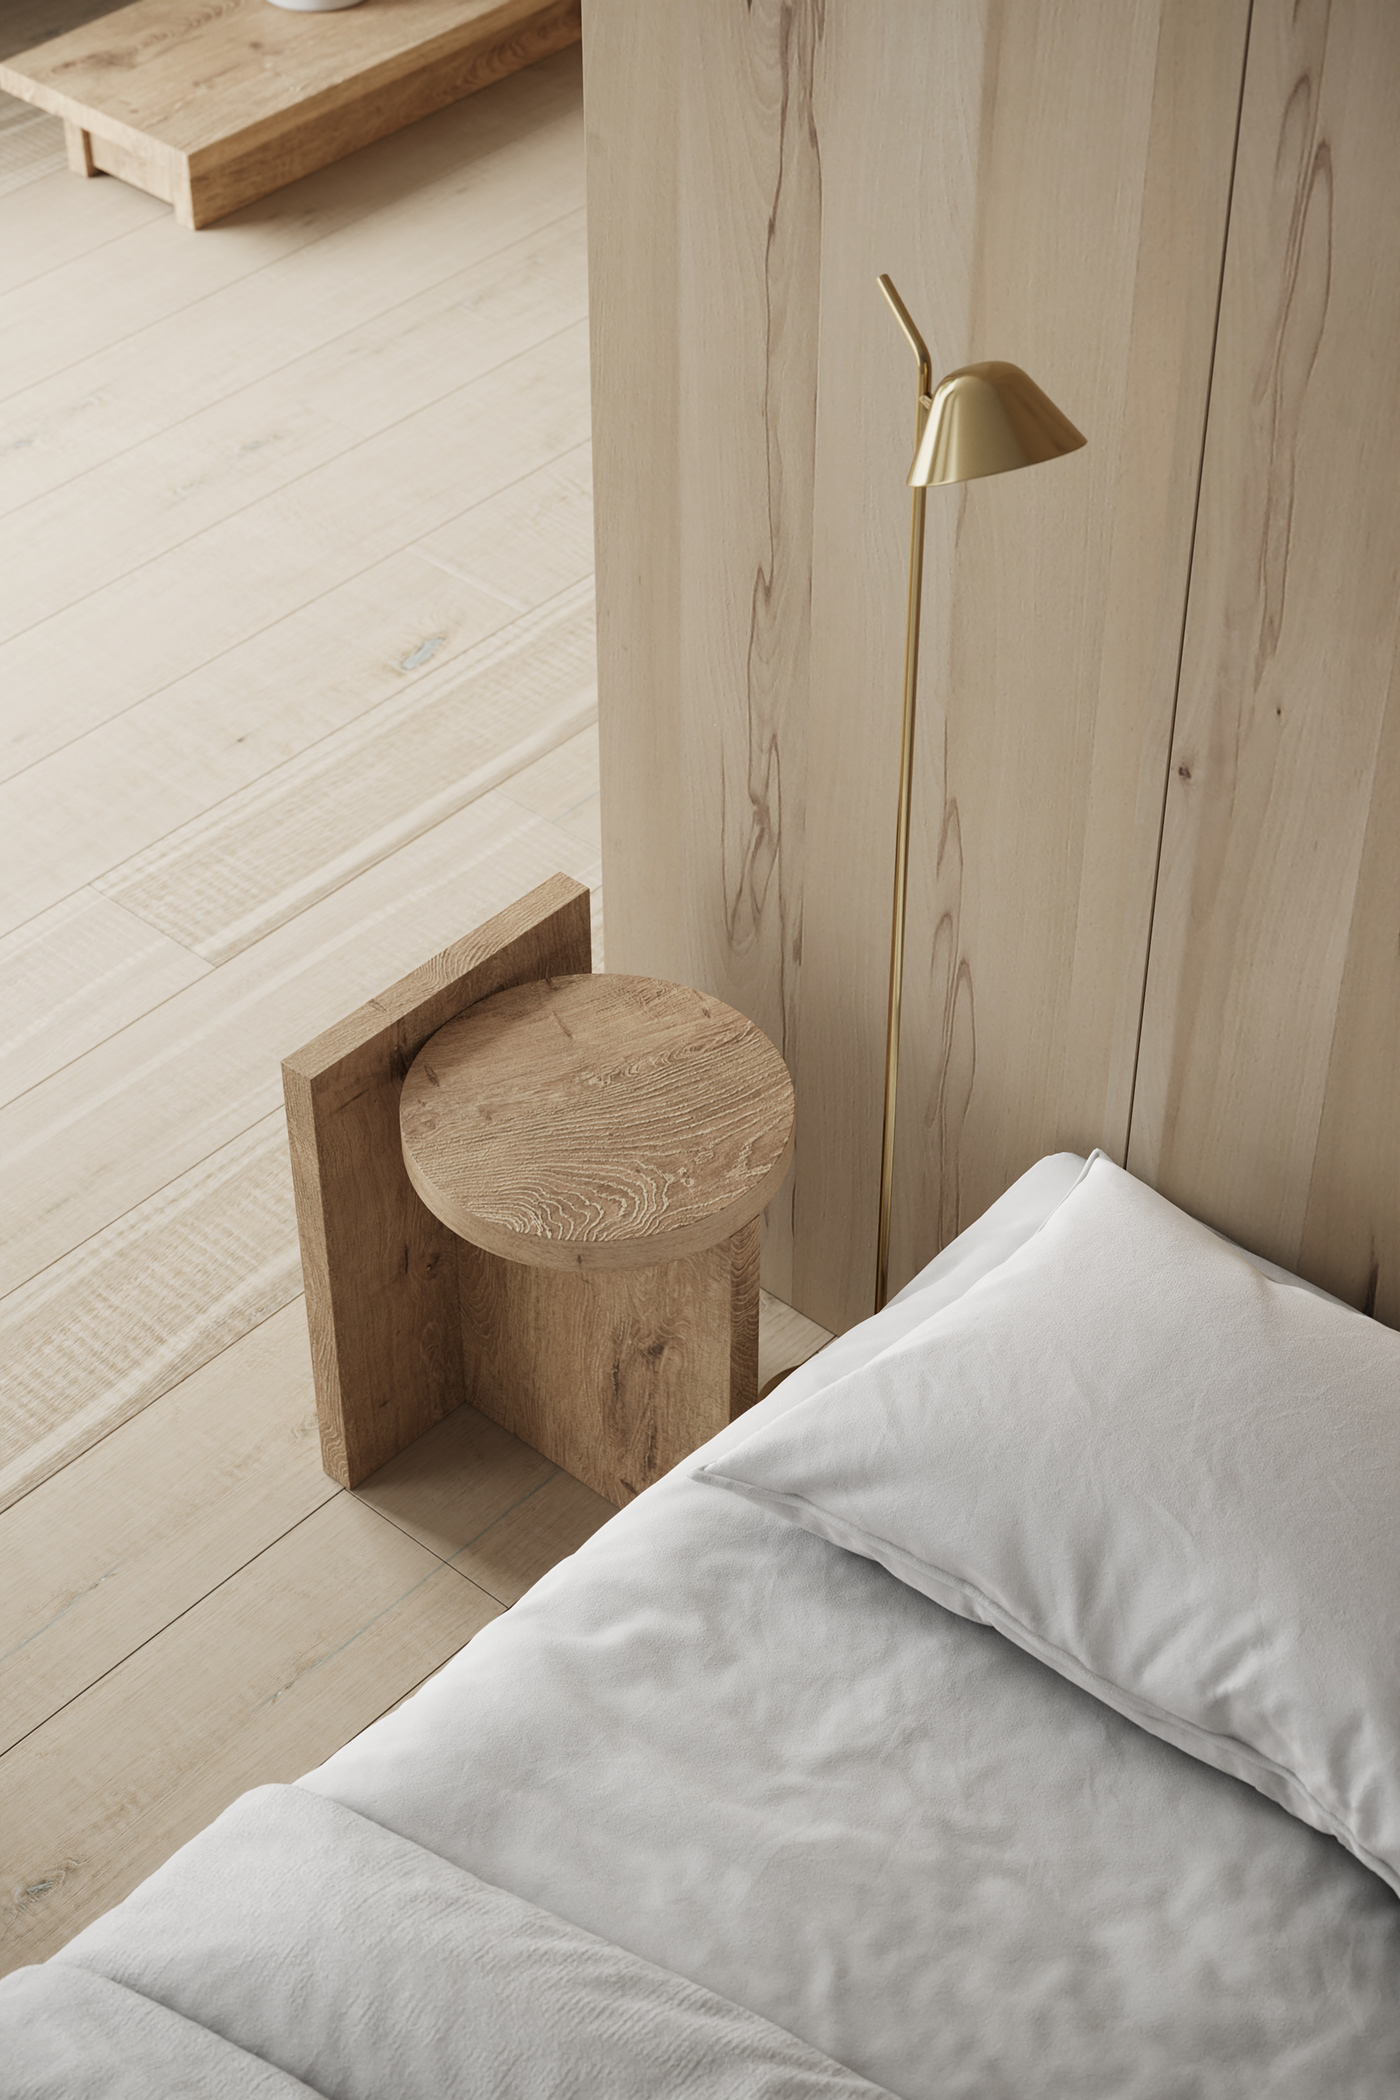 armchair bedroom bedroomdesign DesignConcept inspiring Interior interiordesign Render renderlovers visualization